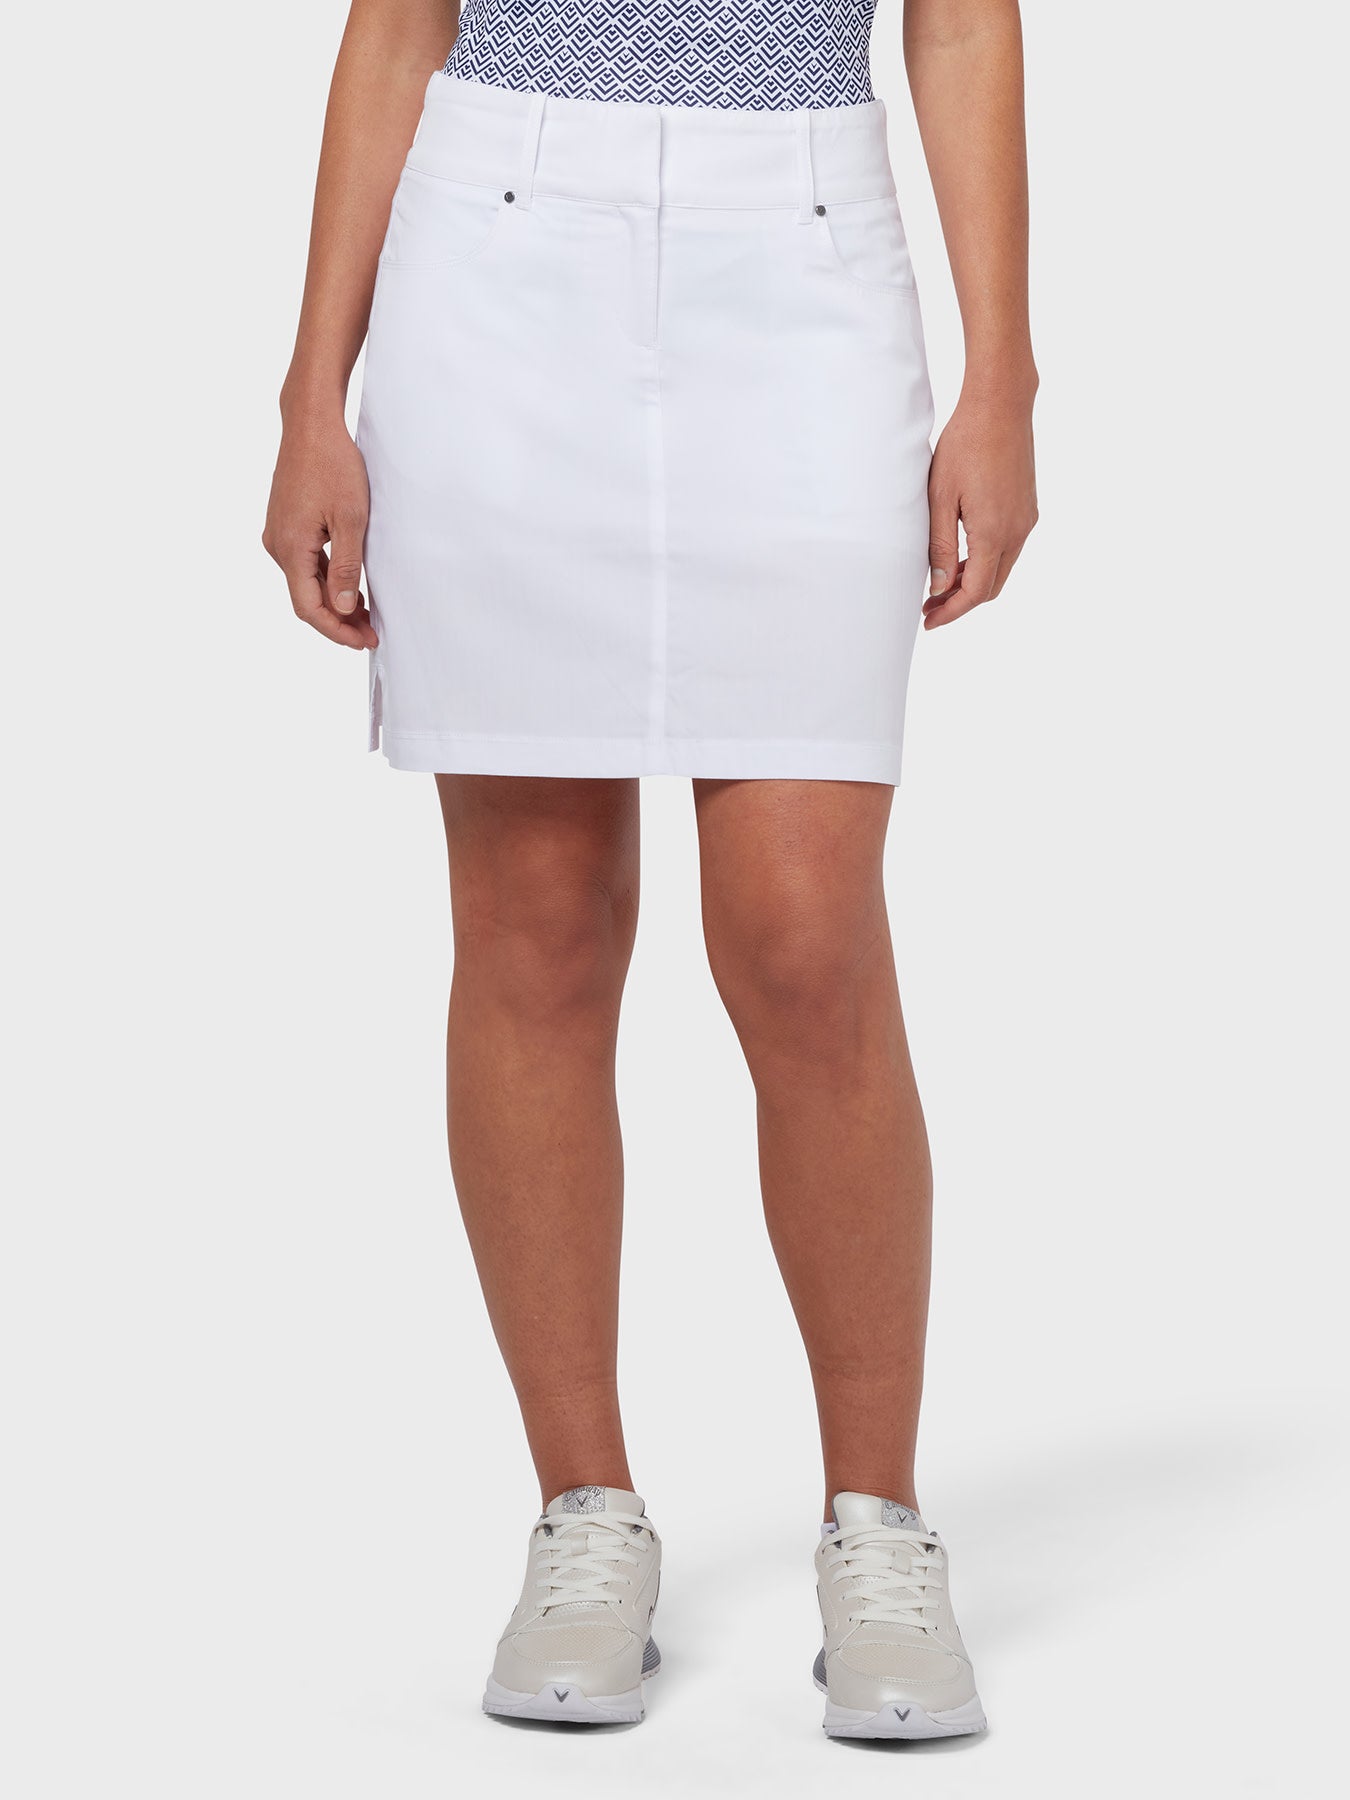 View Ergo Coolmax Womens Skort In Brilliant White Brilliant White XL information